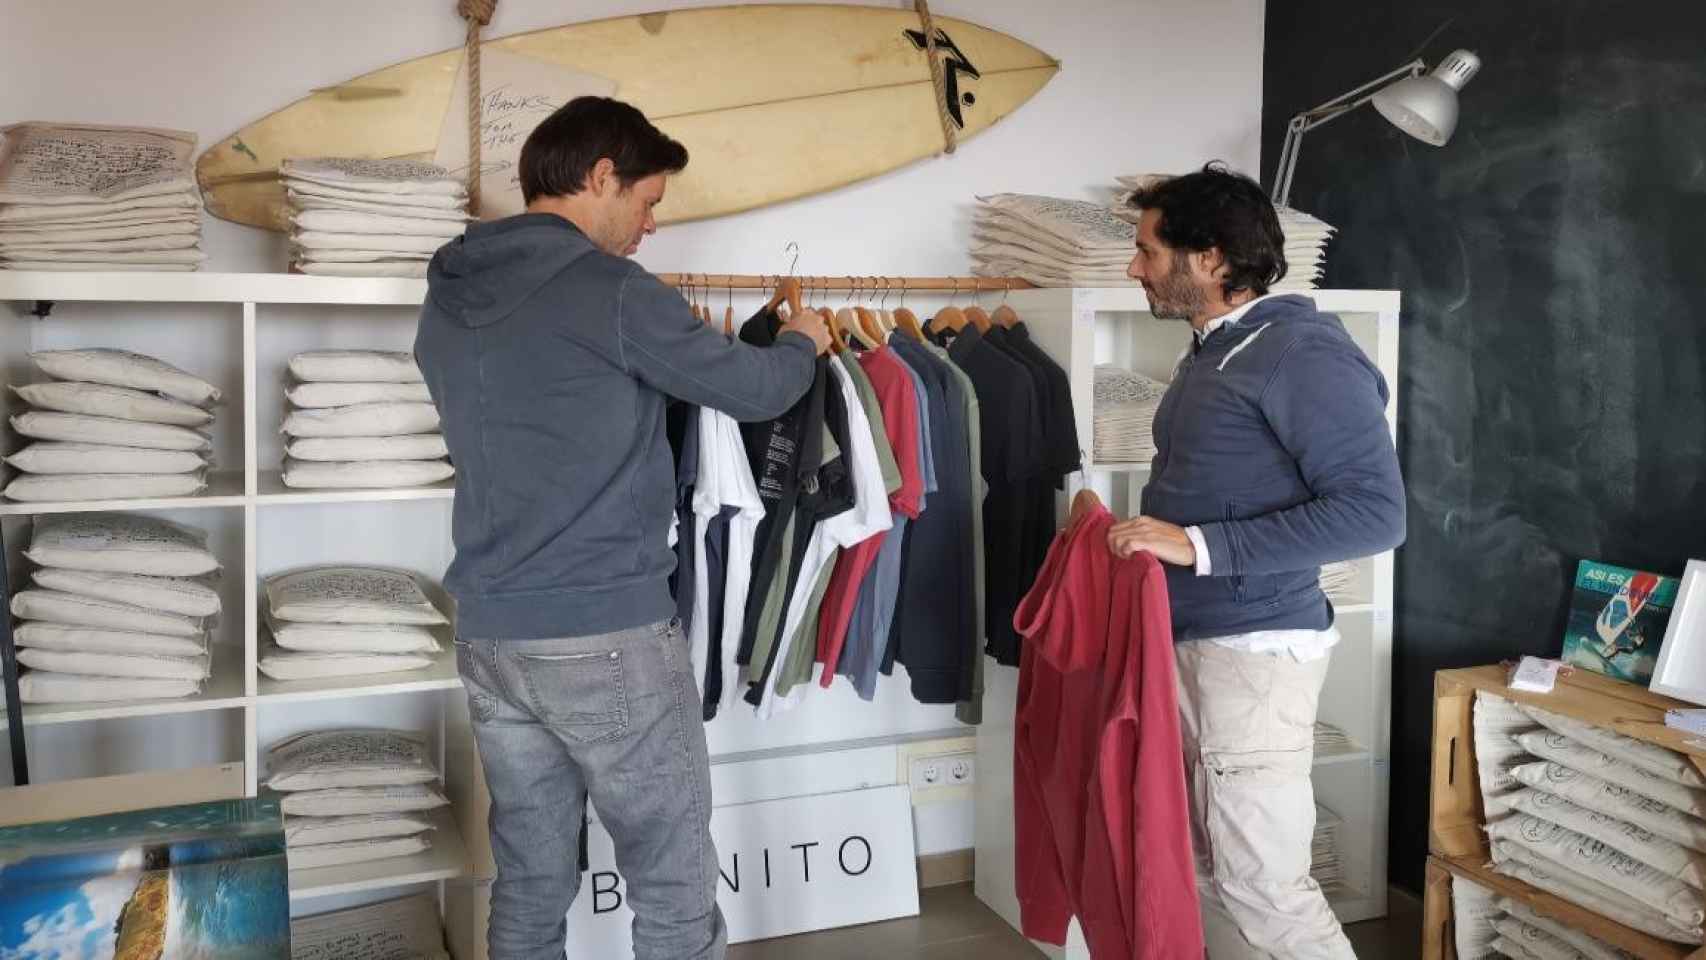 Jordi Noguera y Carlos Martín, creadores de la start-up de ropa sostenible Bonito  /CG